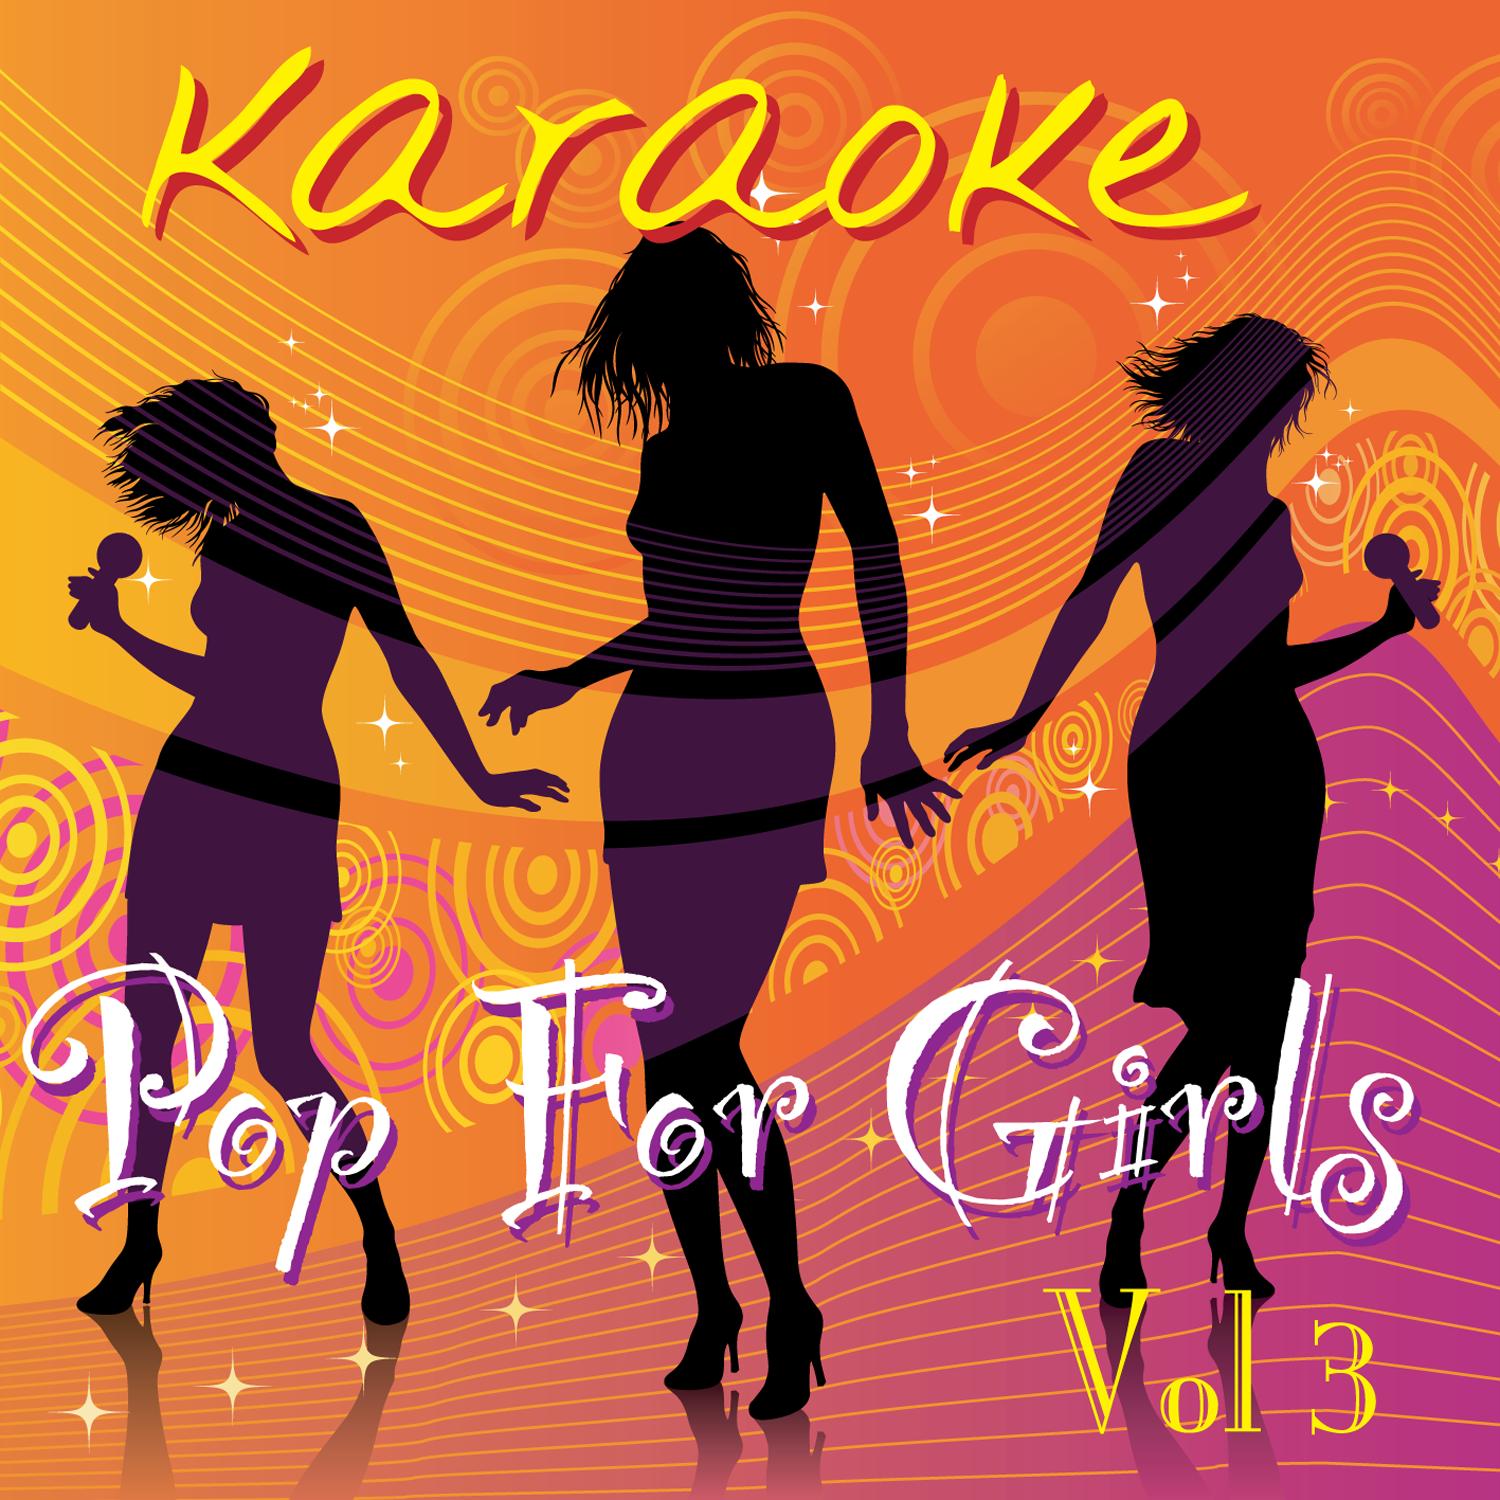 Karaoke - Pop For Girls Vol.3